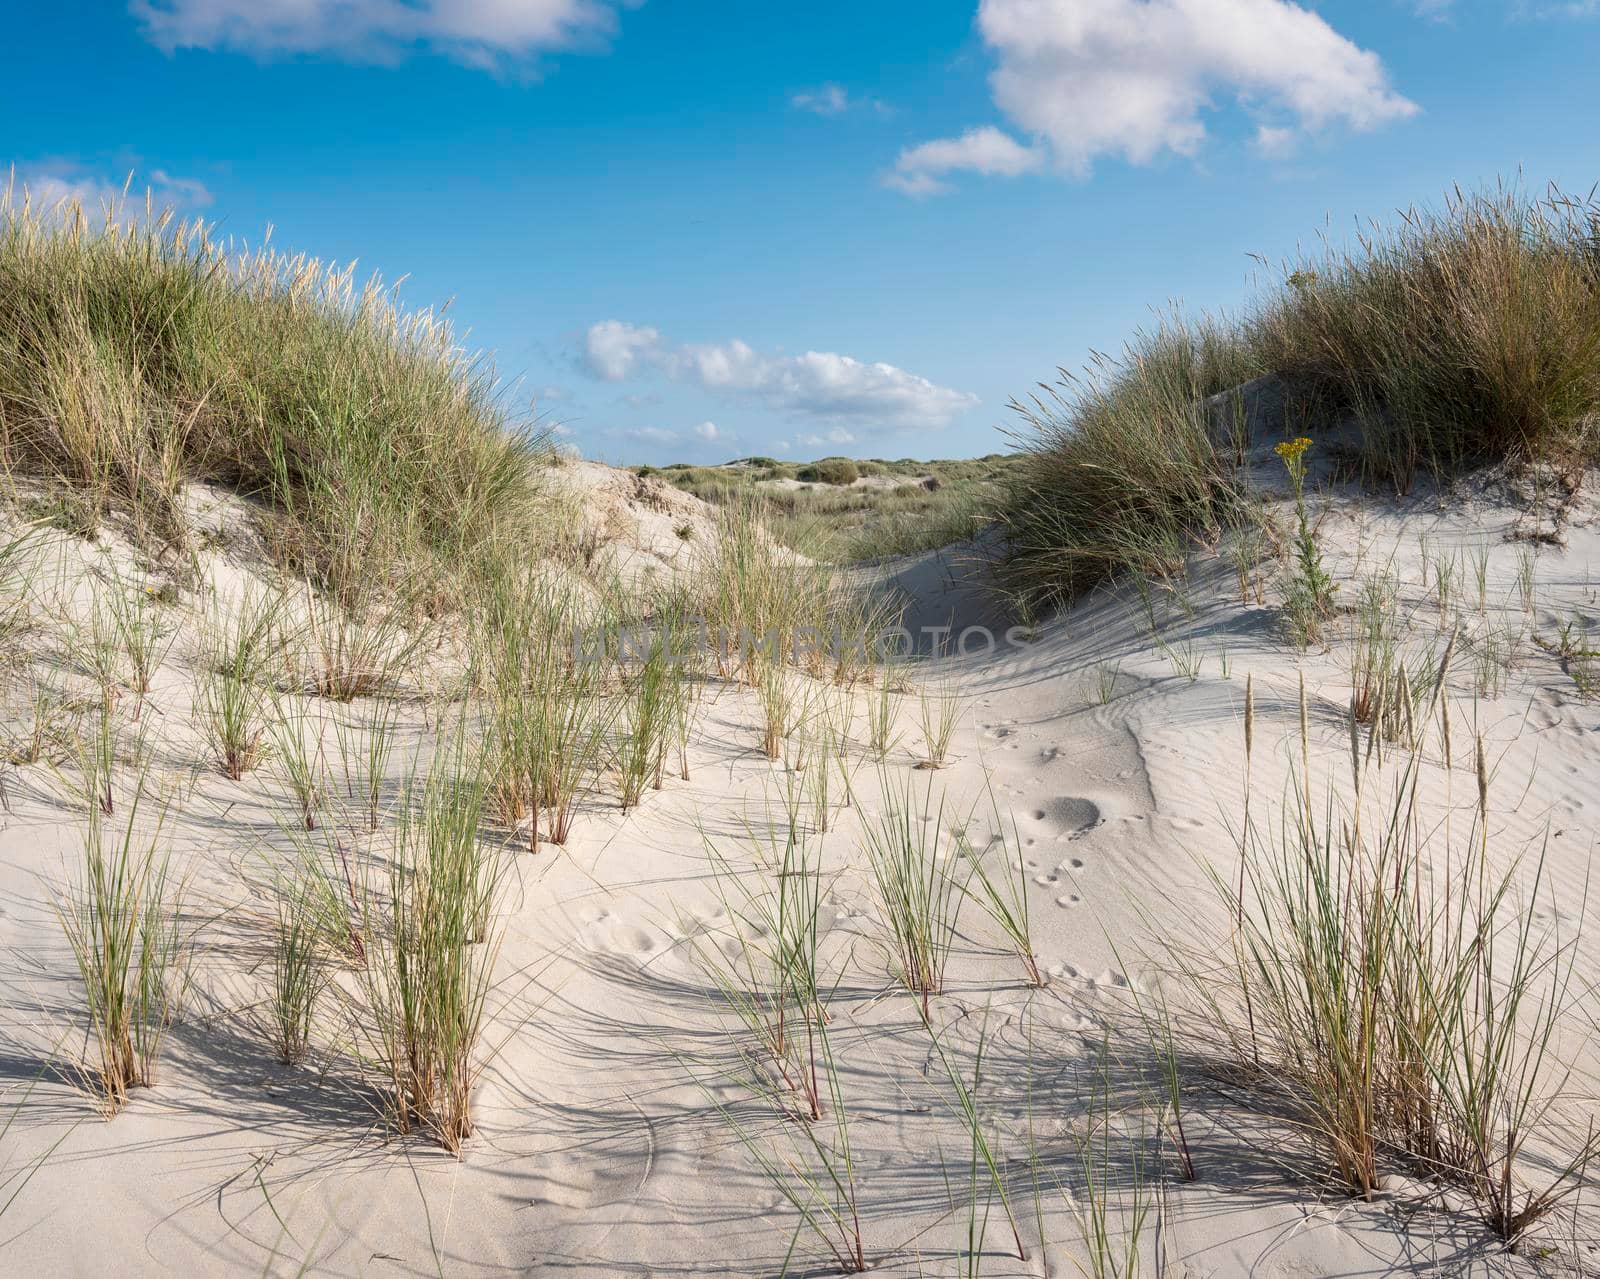 dutch wadden islands have many deserted sand dunes uinder blue summer sky in the netherlands by ahavelaar